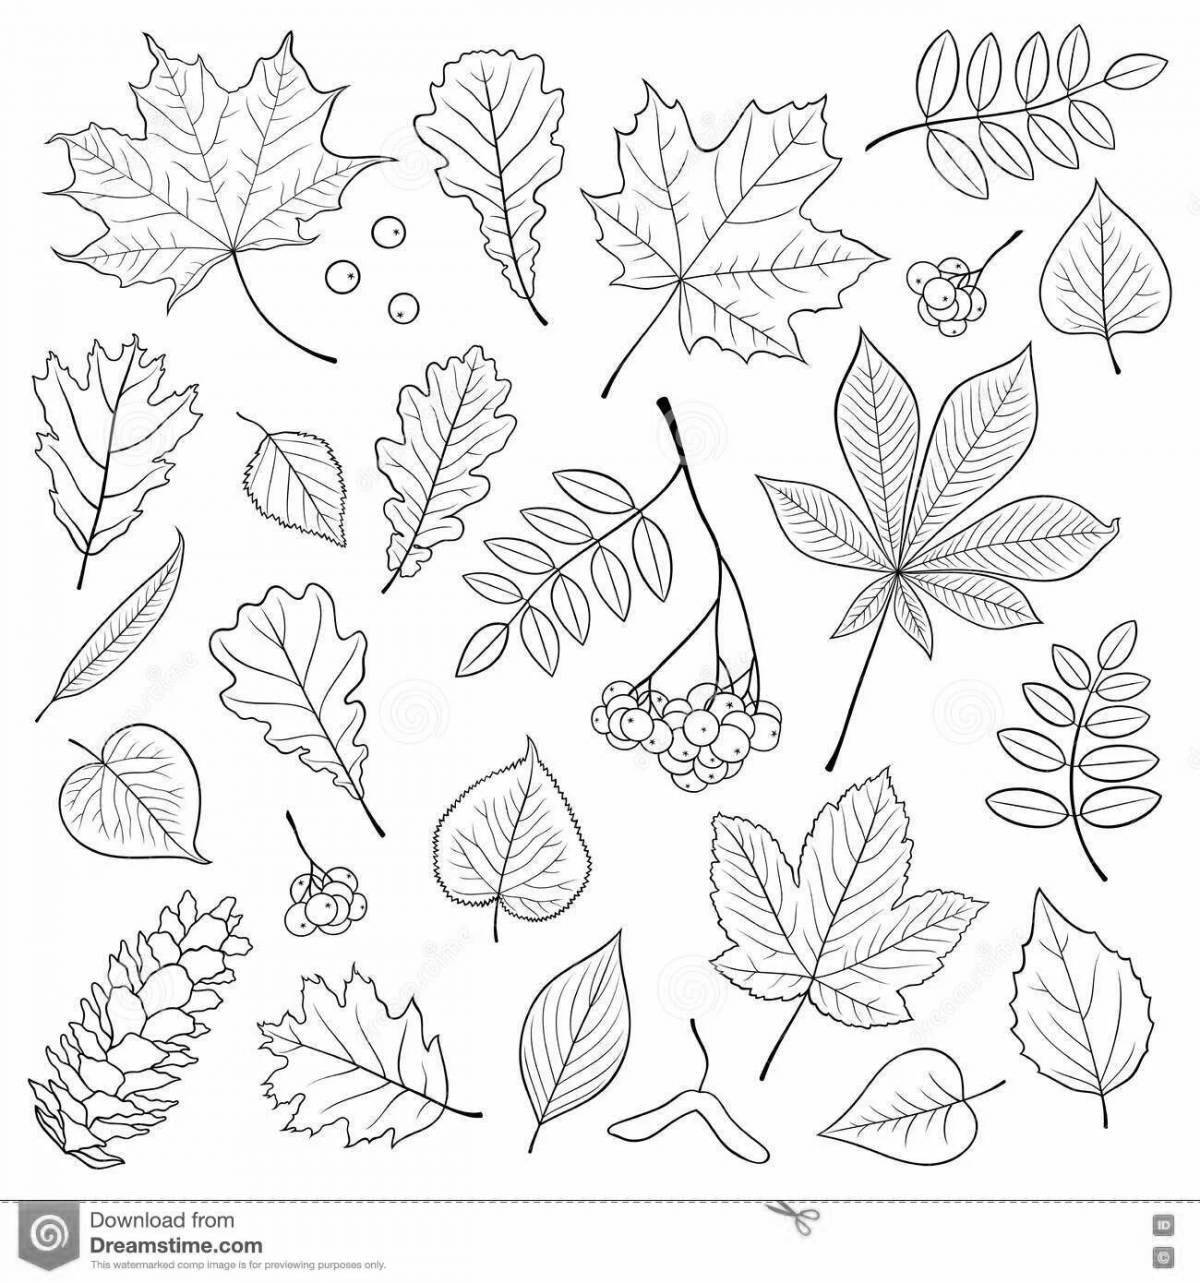 Великолепная раскраска листьев рябины